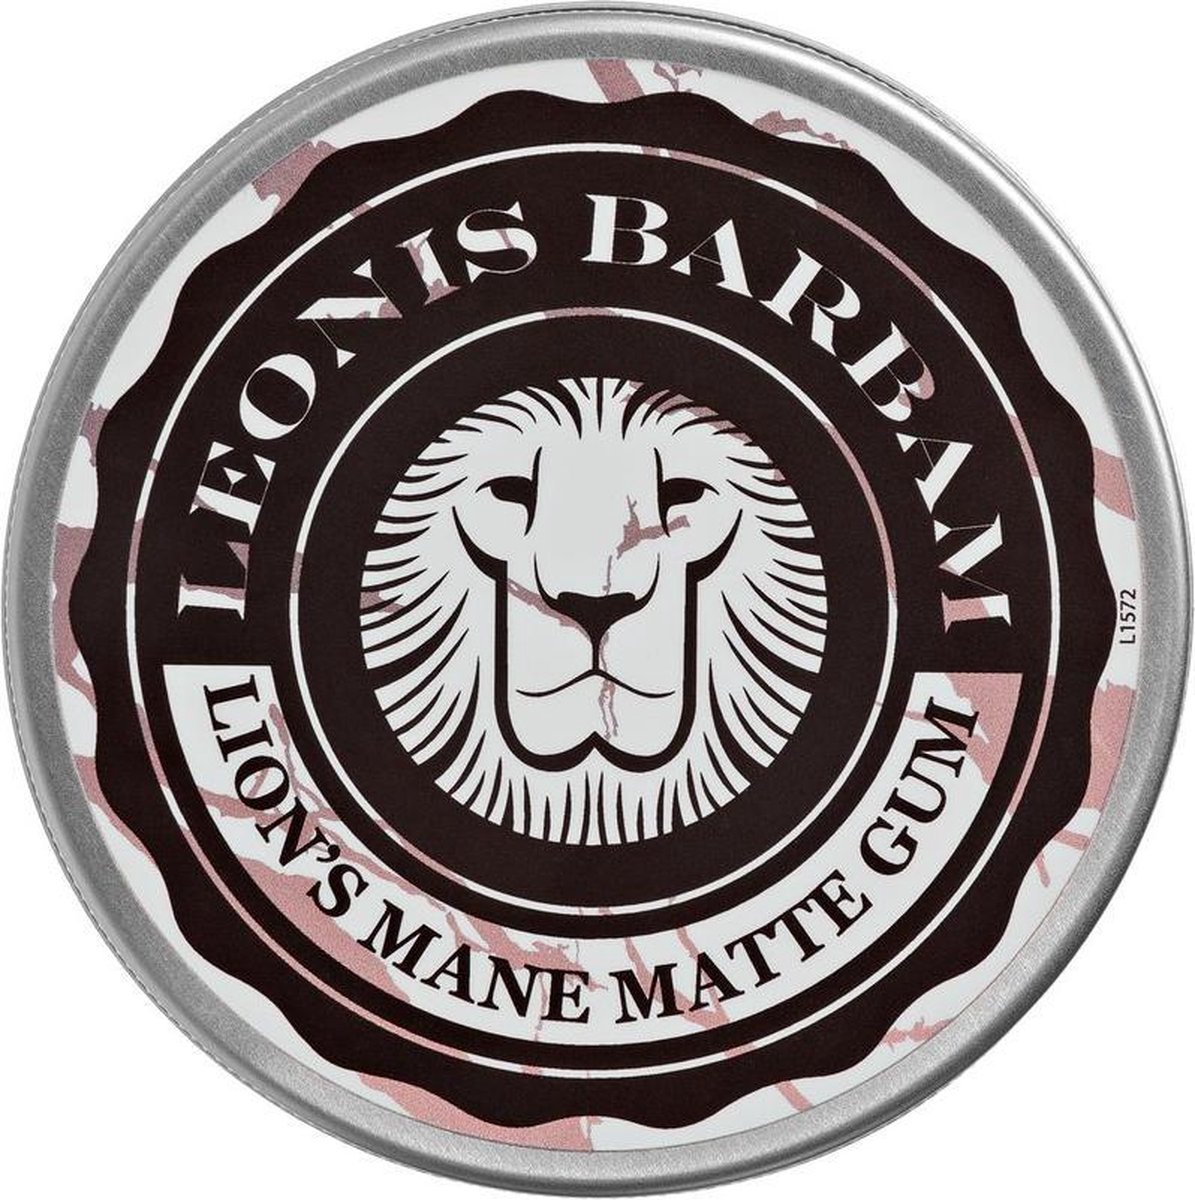 Lion's Mane Matte Gum Leonis Barbam